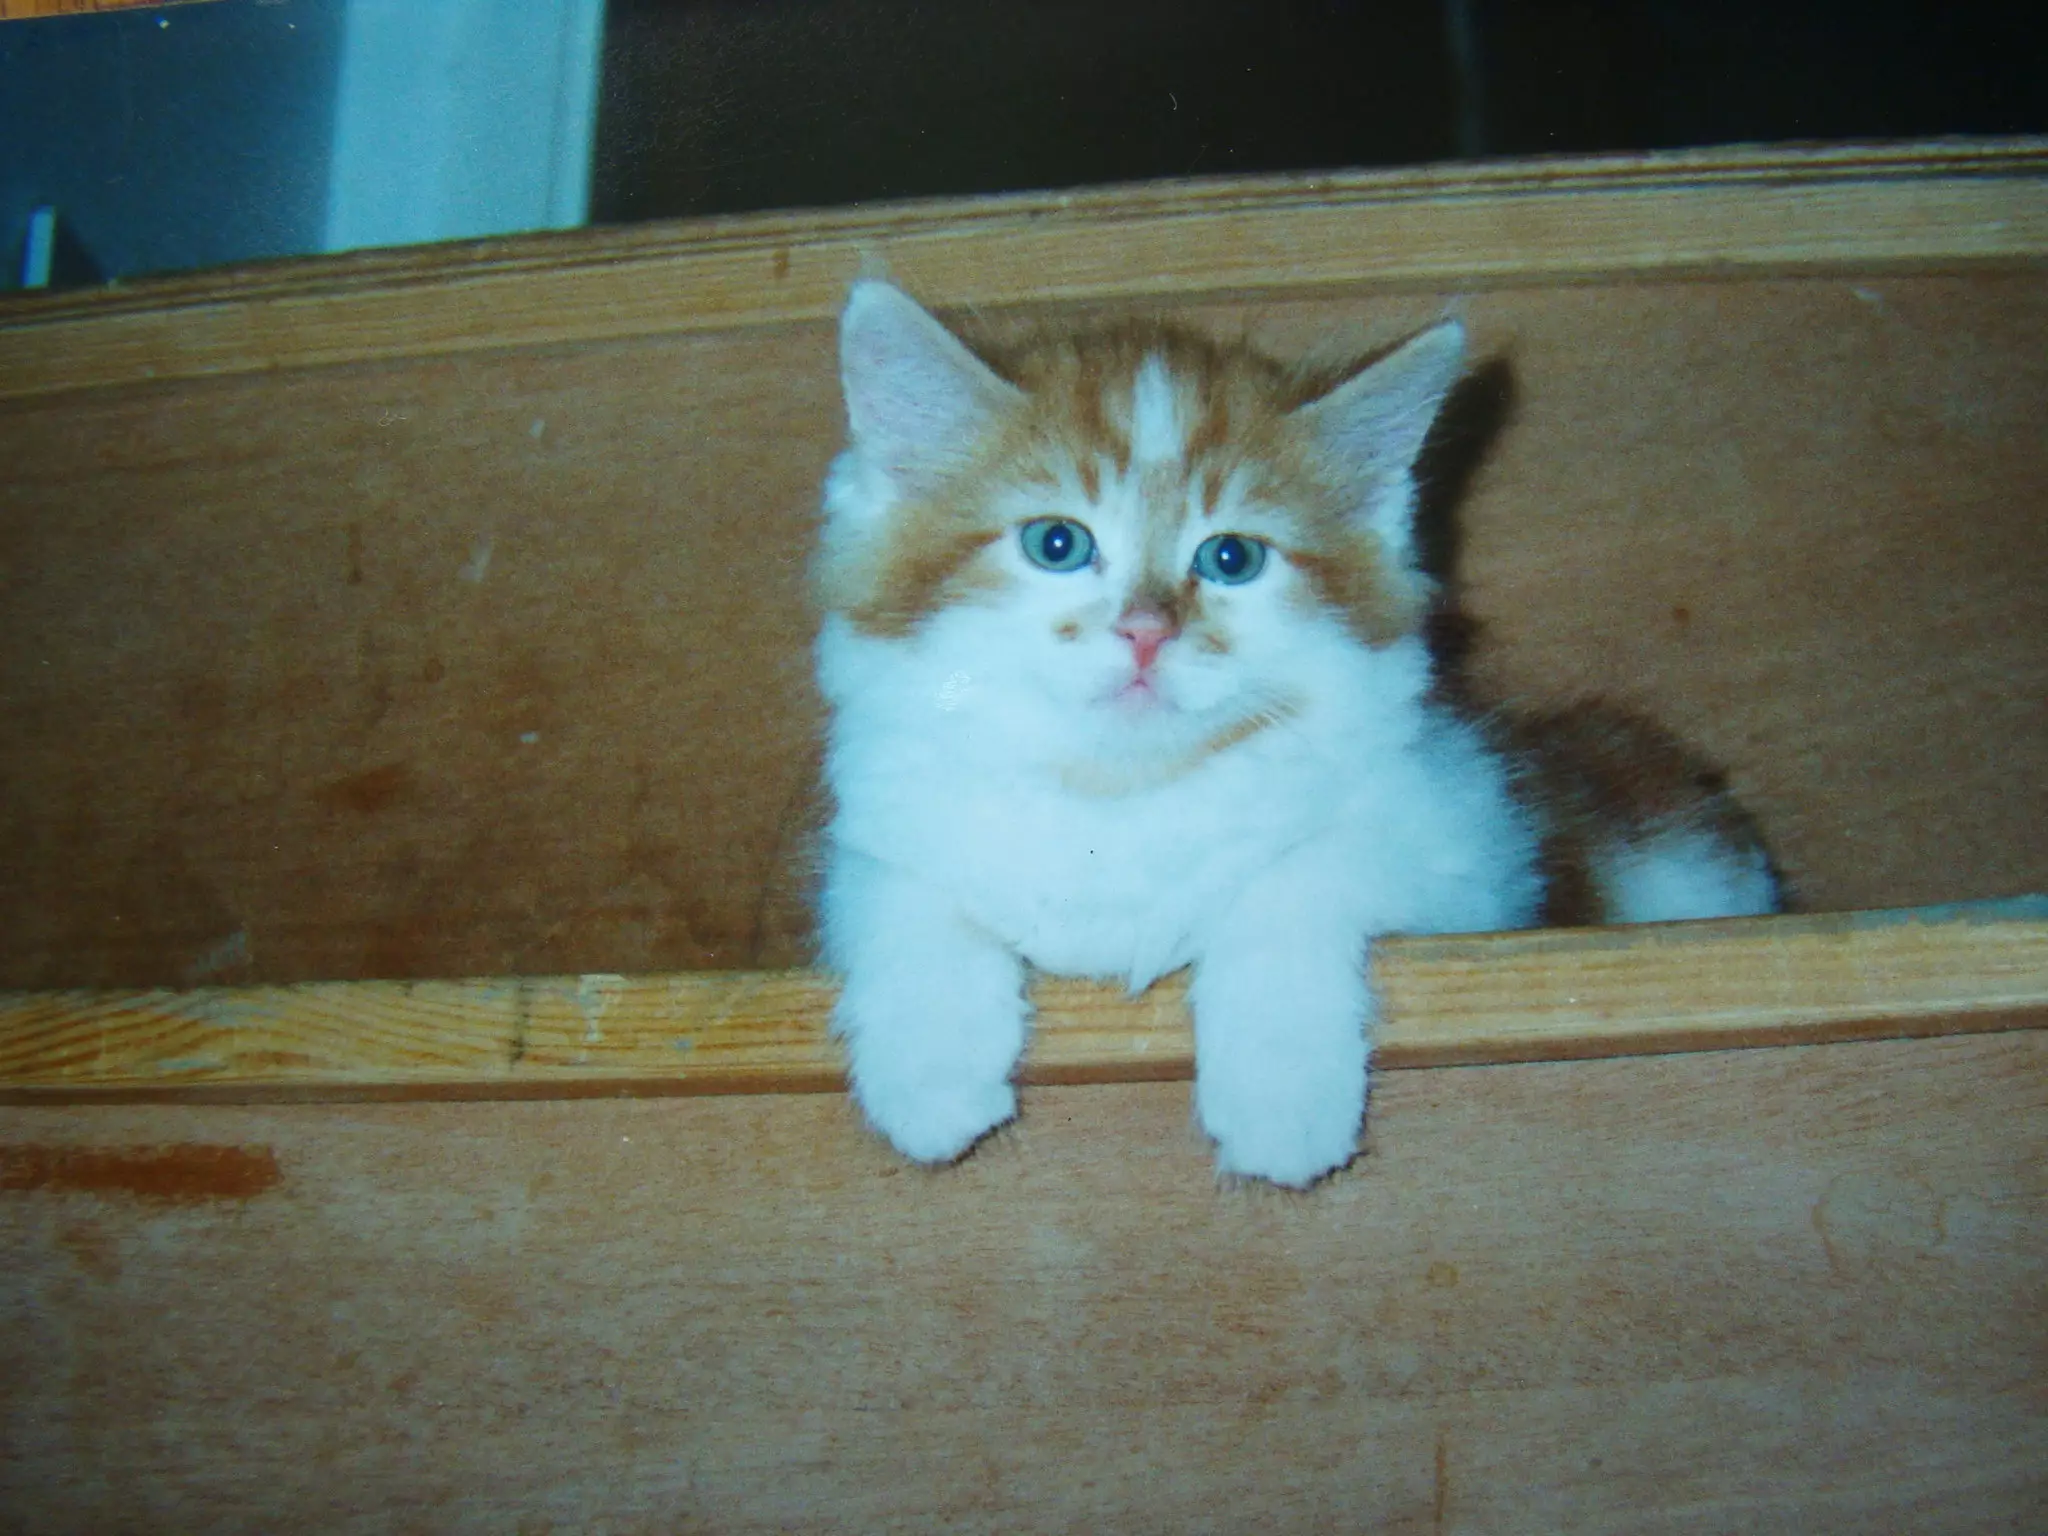 Rubble when he was a kitten.